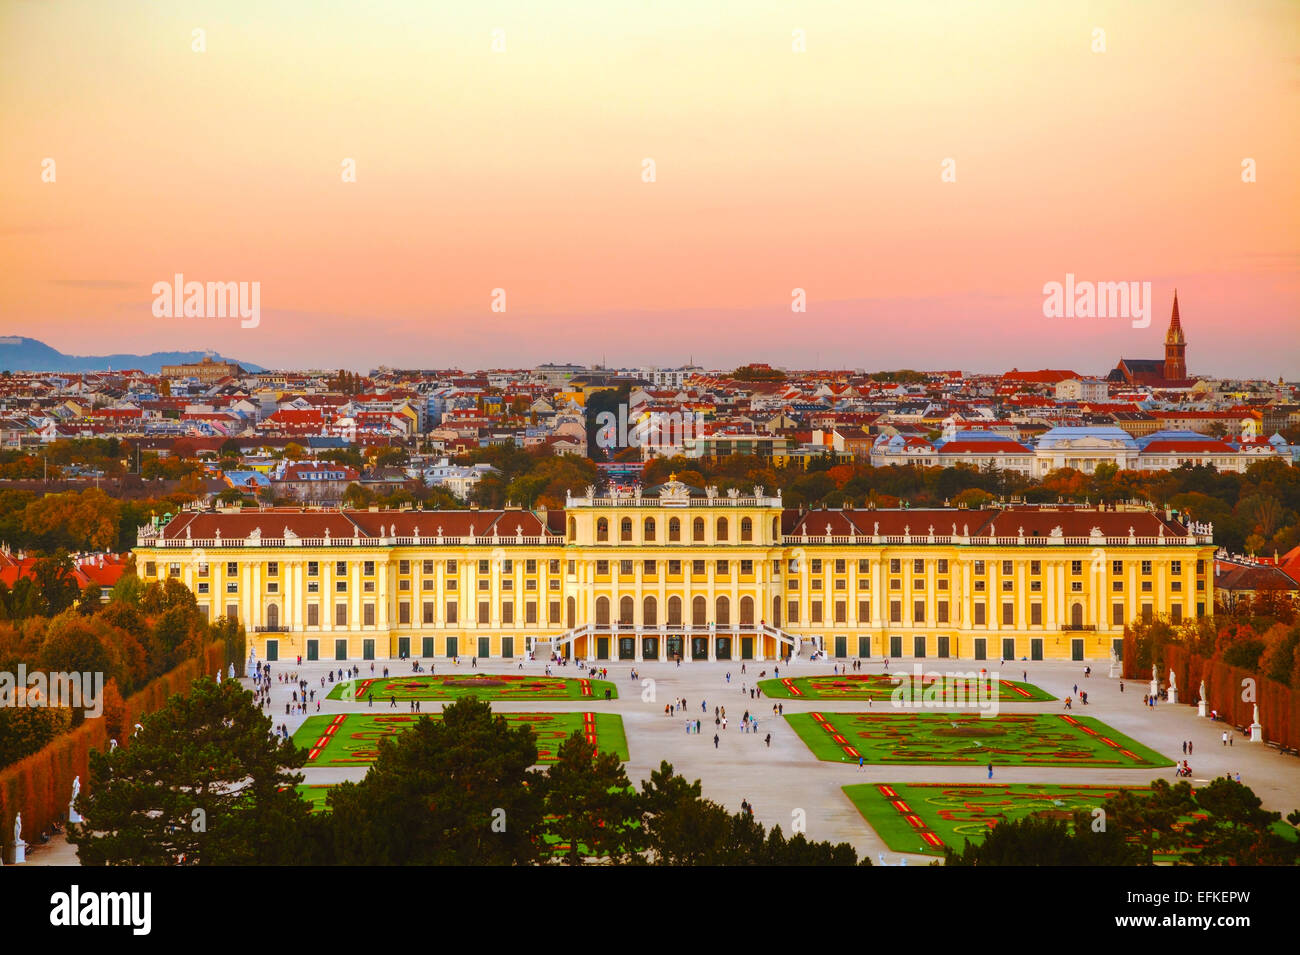 Viena - 19 de octubre: palacio de Schonbrunn al atardecer el 19 de octubre de 2014 en Viena. Foto de stock